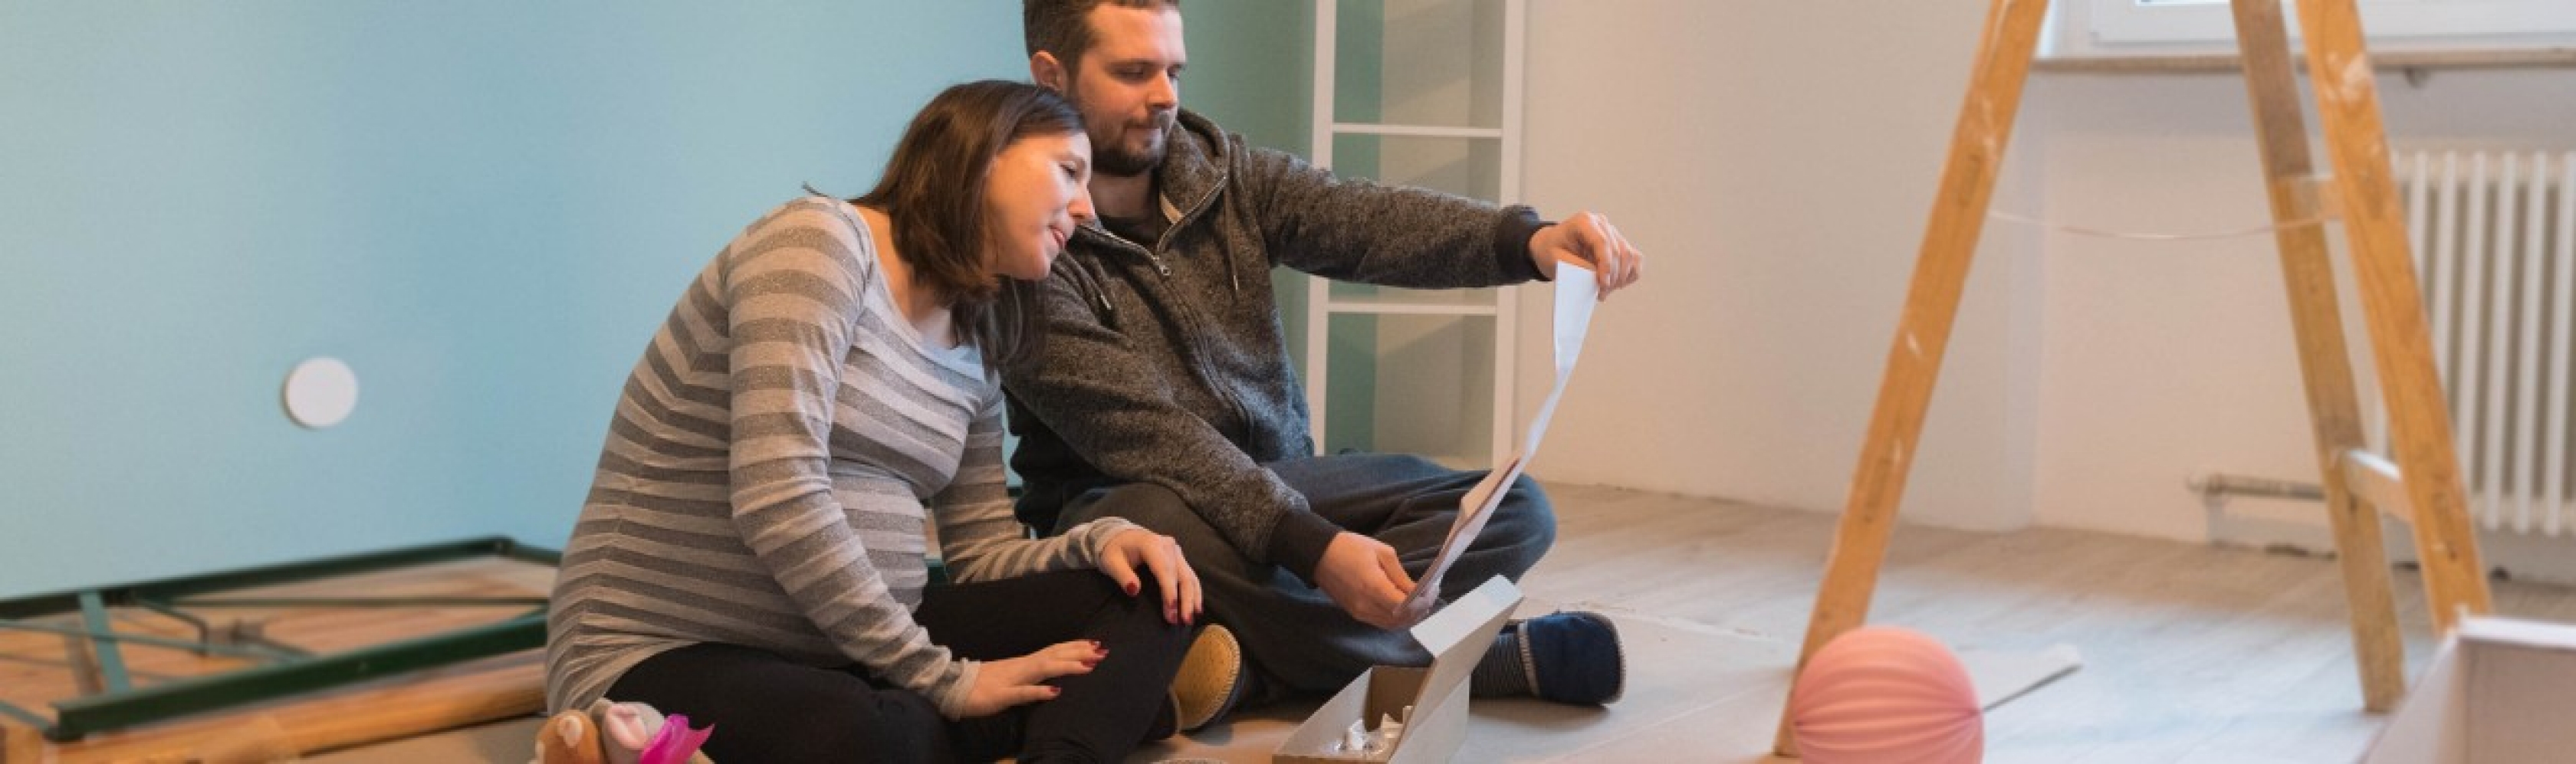 Unterstützung der Partnerin während der Schwangerschaft – Paar sitzt auf dem Boden und liest eine Anleitung